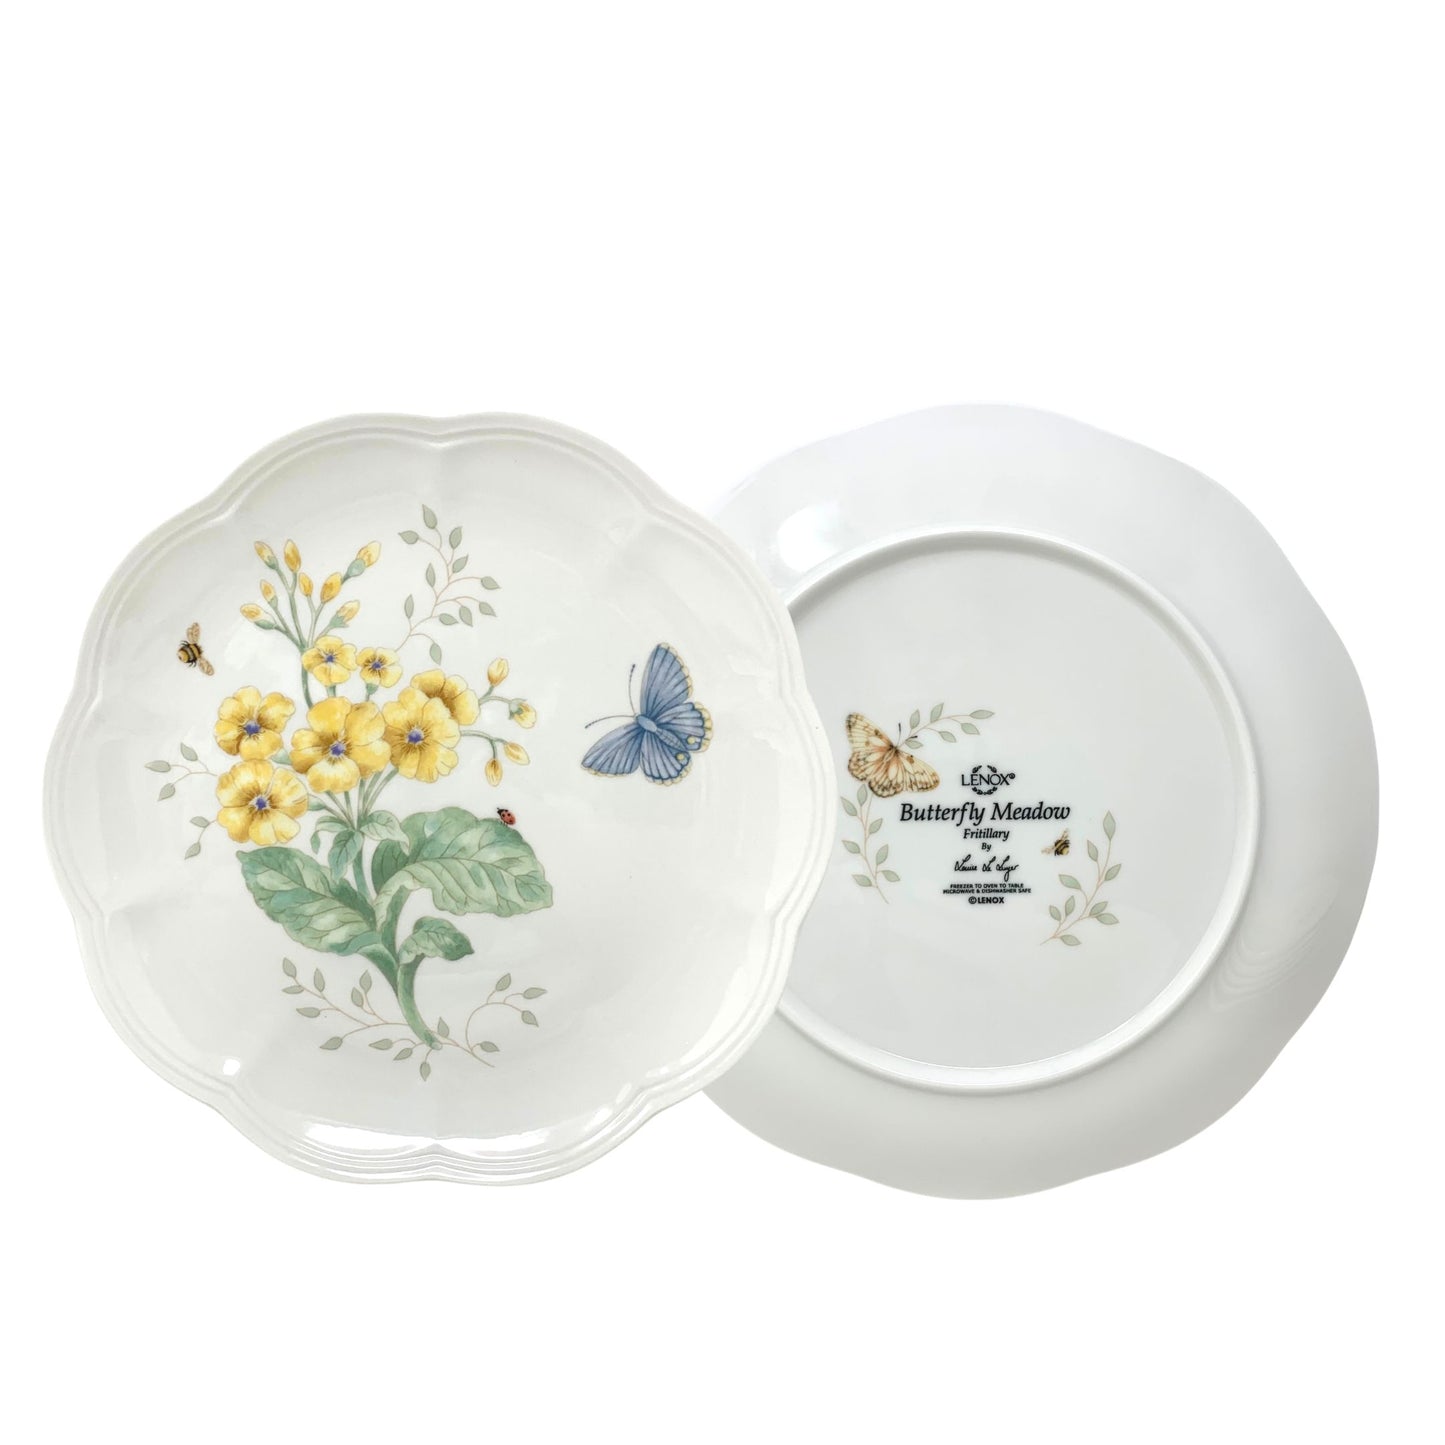 Lenox "Butterfly Meadow" Luncheon Plates (8)